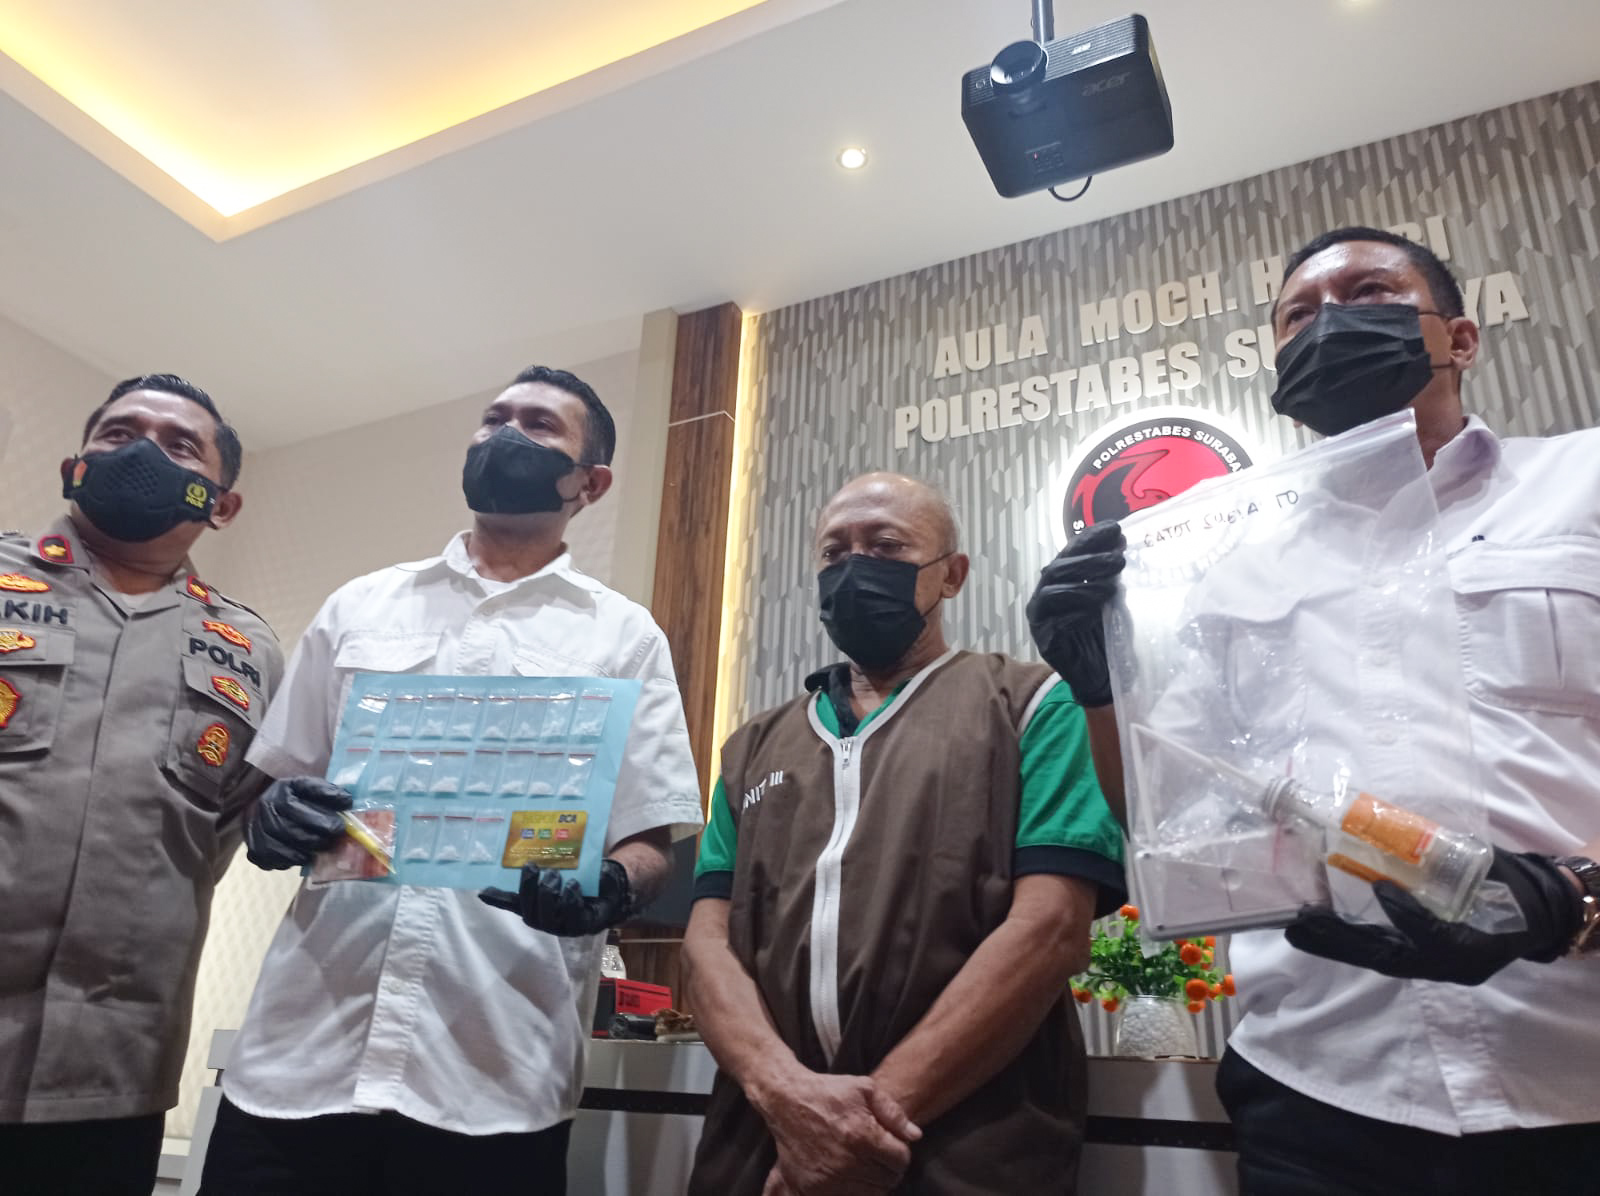 Siap Edarkan 19 Paket Sabu, Warga Srikana Gubeng Dibekuk Polisi 